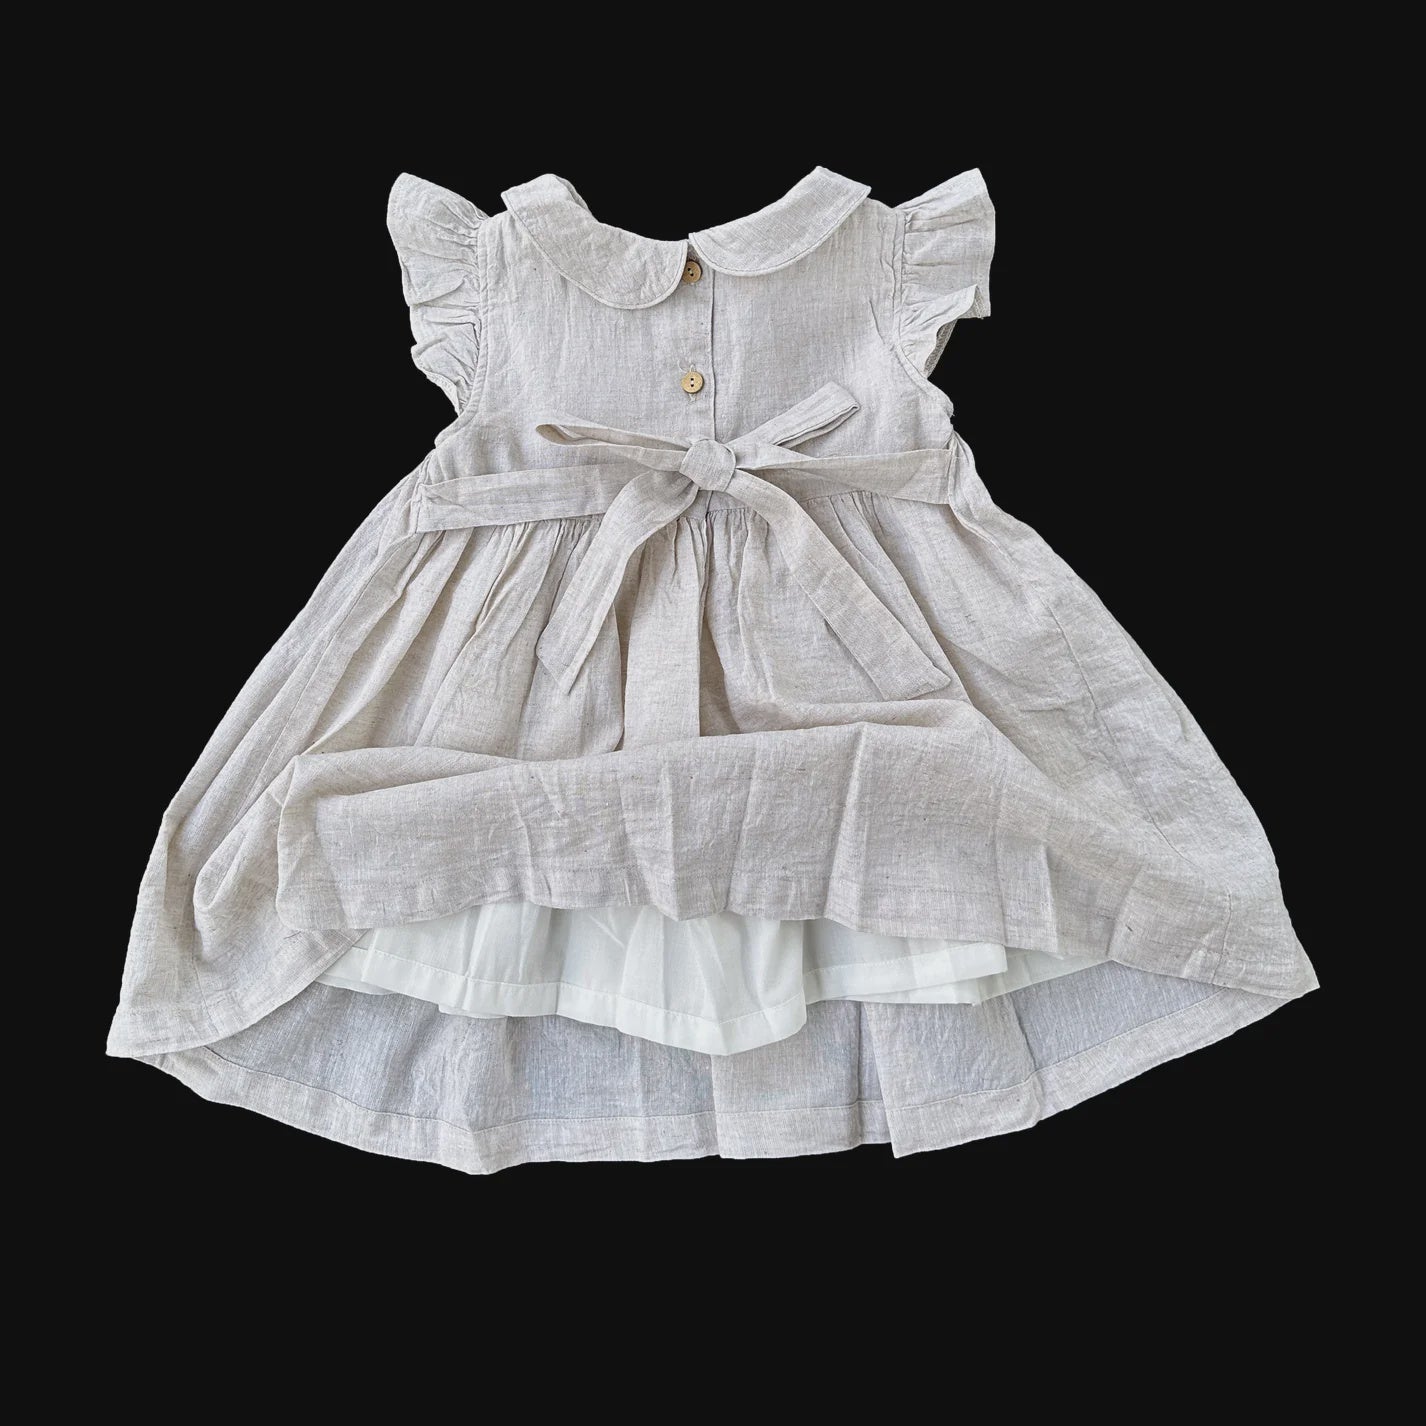 Natural Linen Smocked Dress Size 2